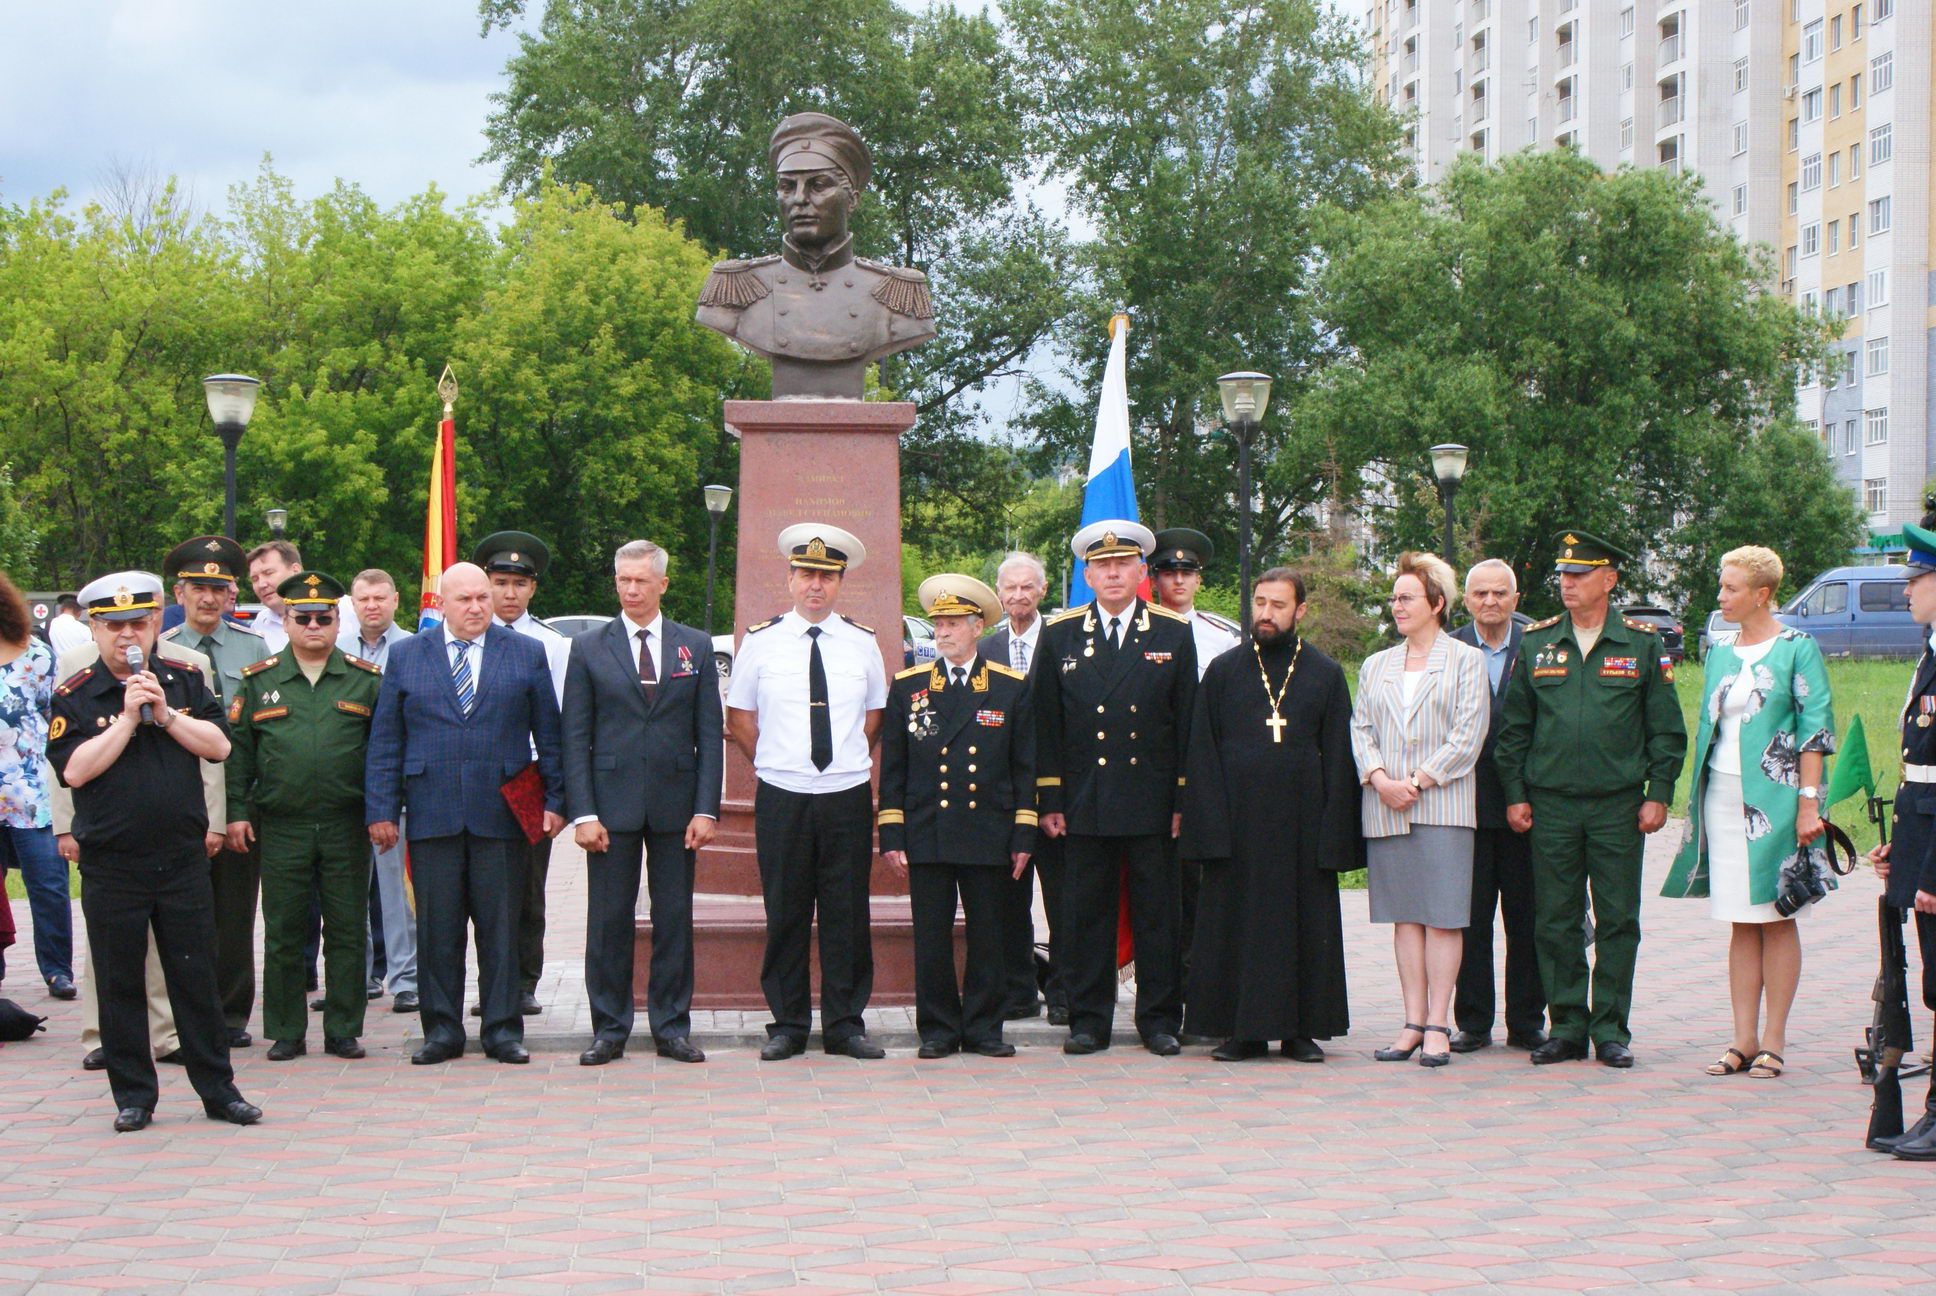 Нижегородцы отметили 125-летие со дня рождения адмирала Нахимова - фото 2